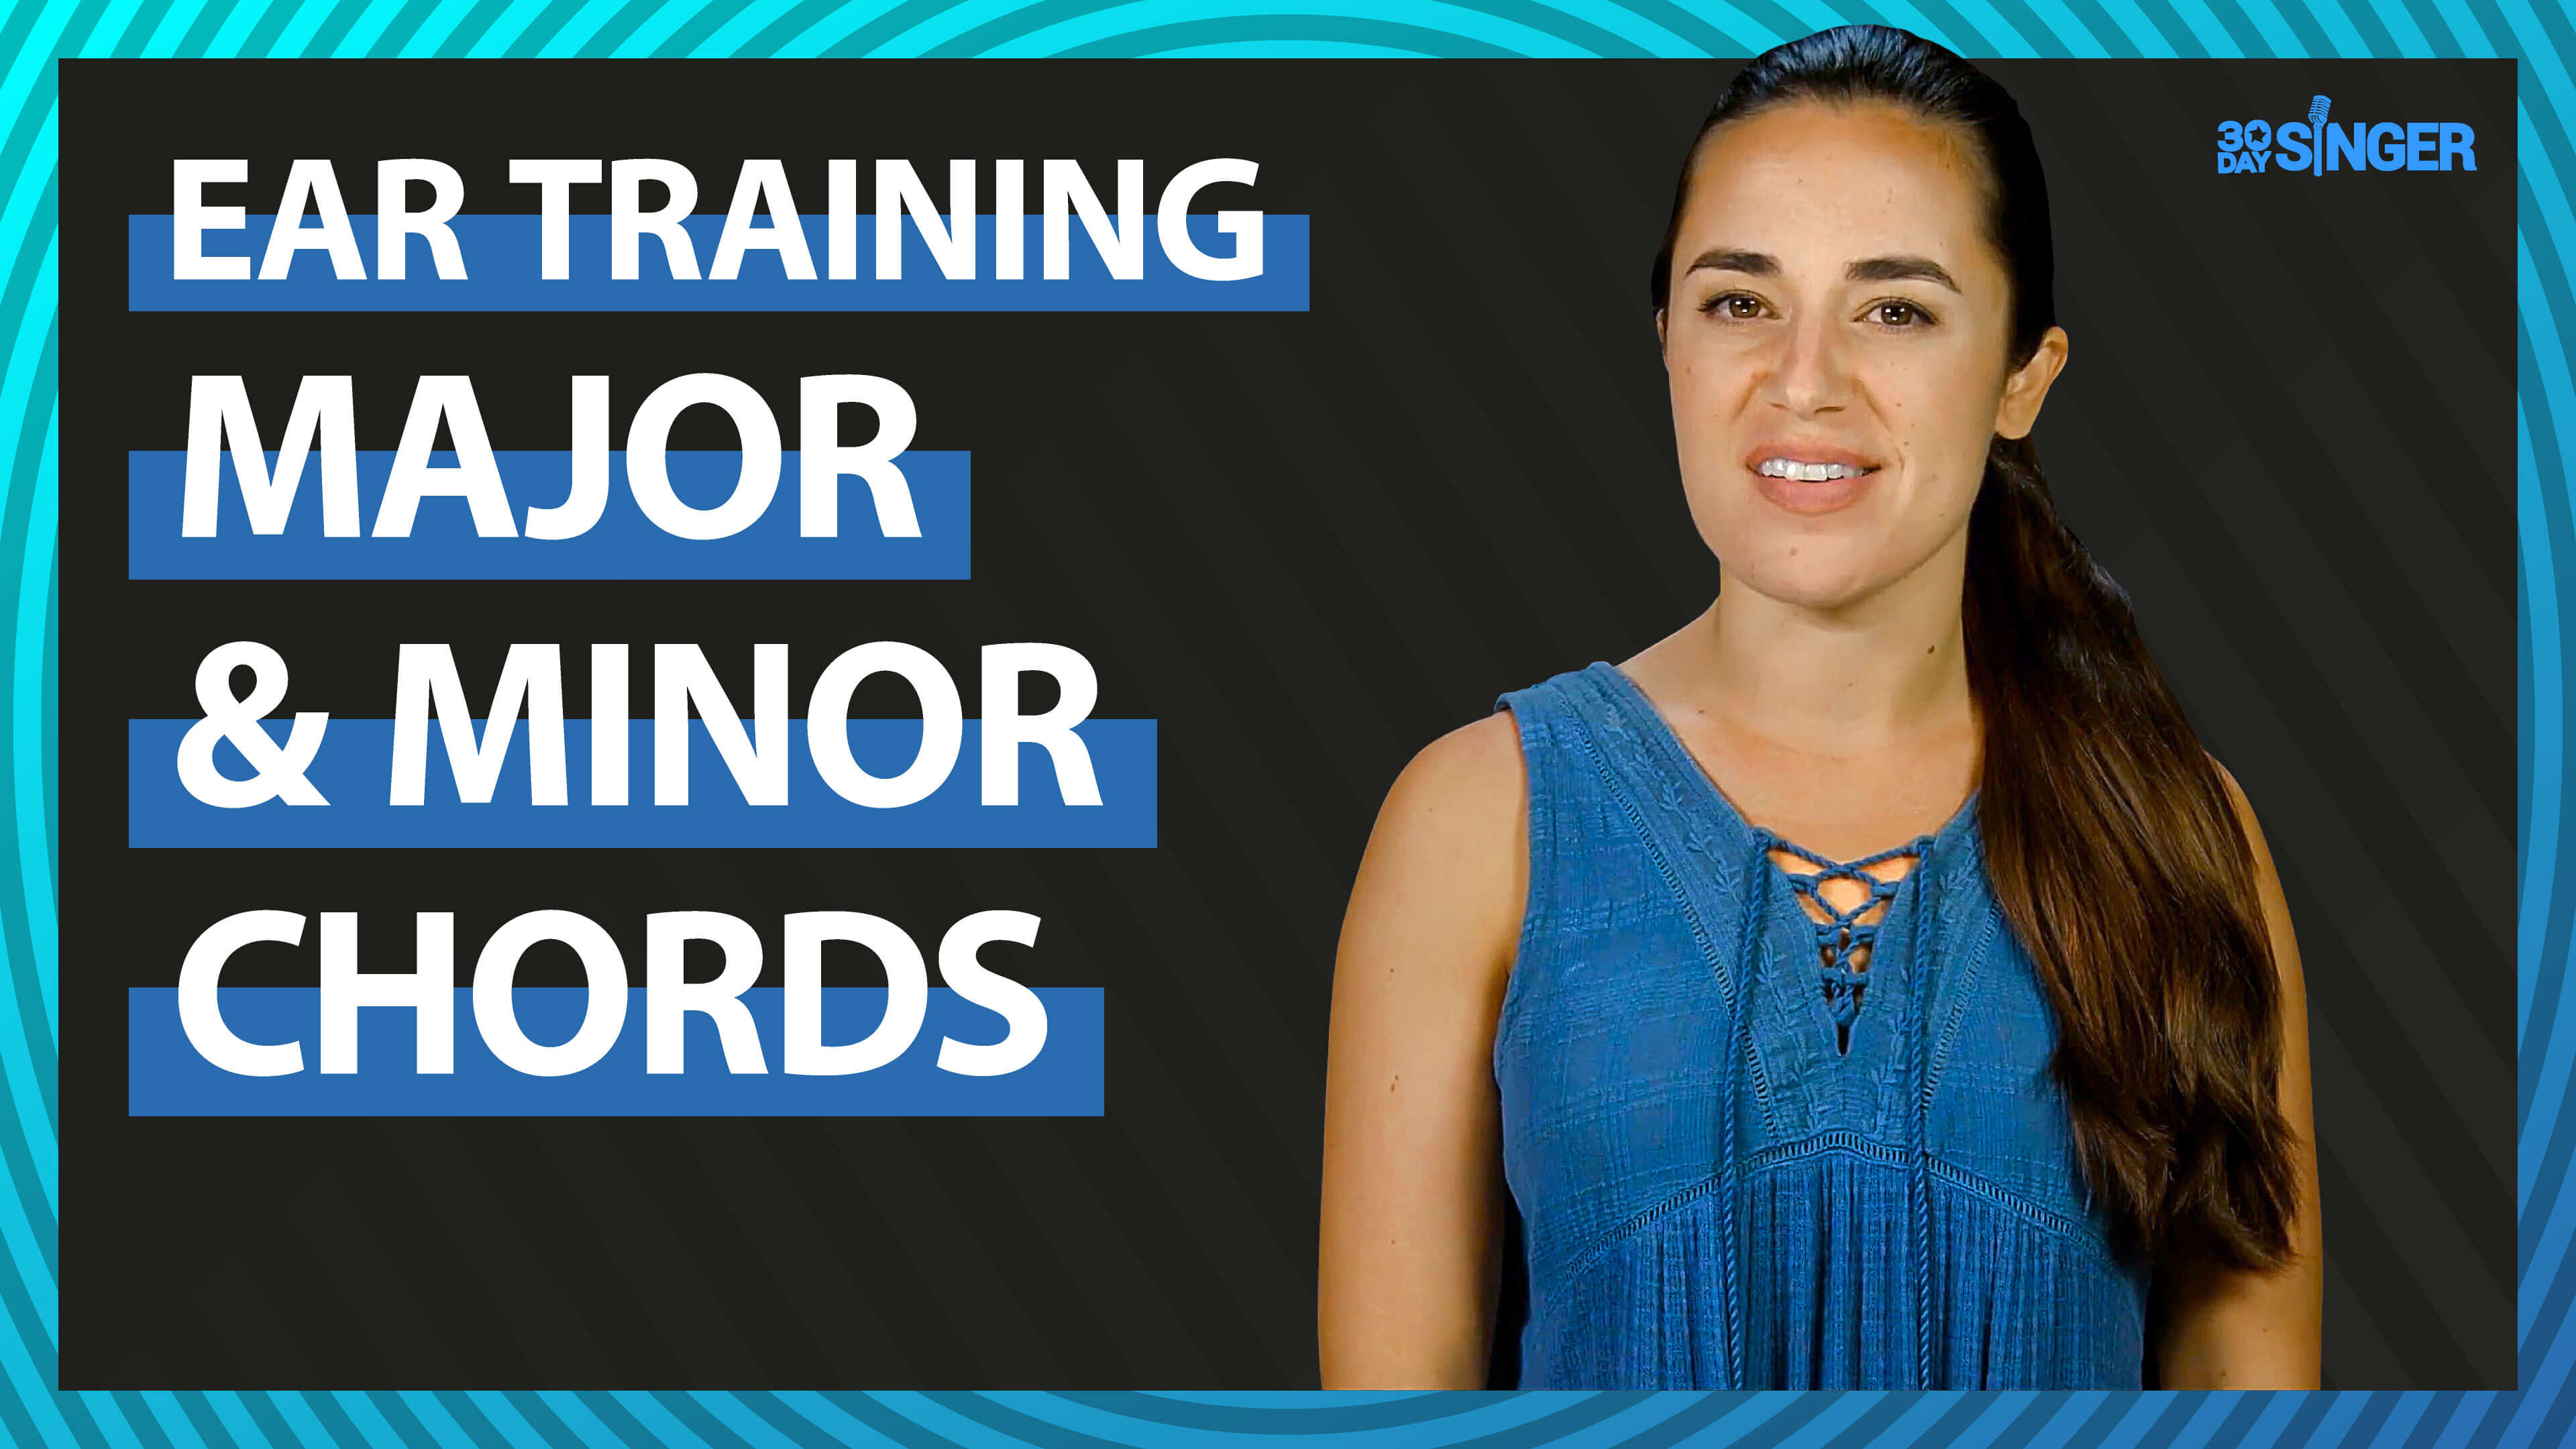 Ear training: Major & minor chords